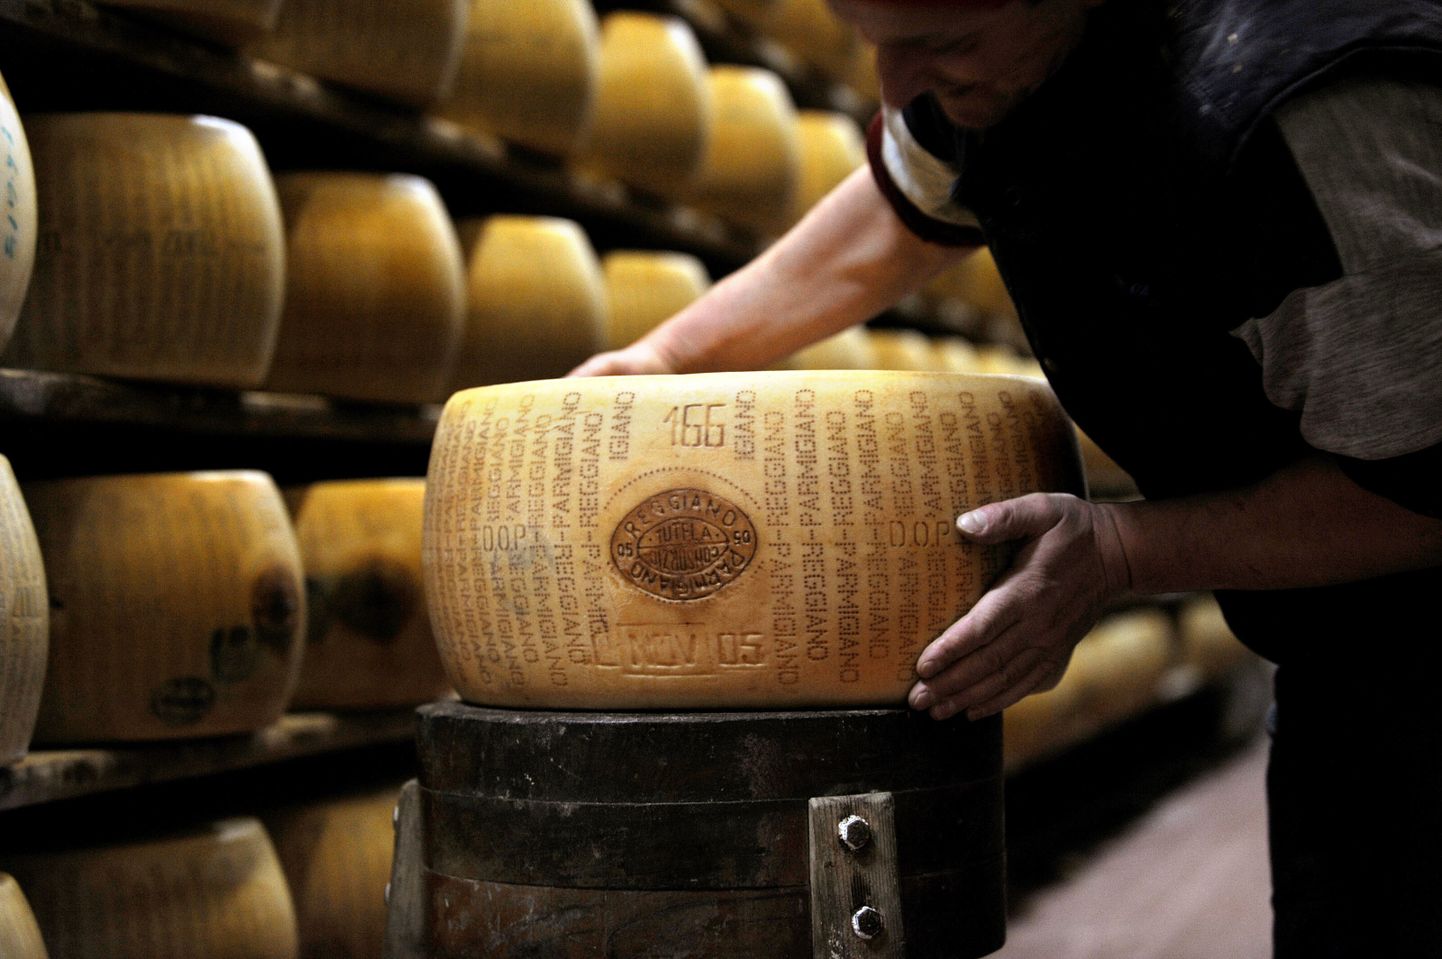 Töötaja Valestras Parmigiano Reggiano juustukeraga.